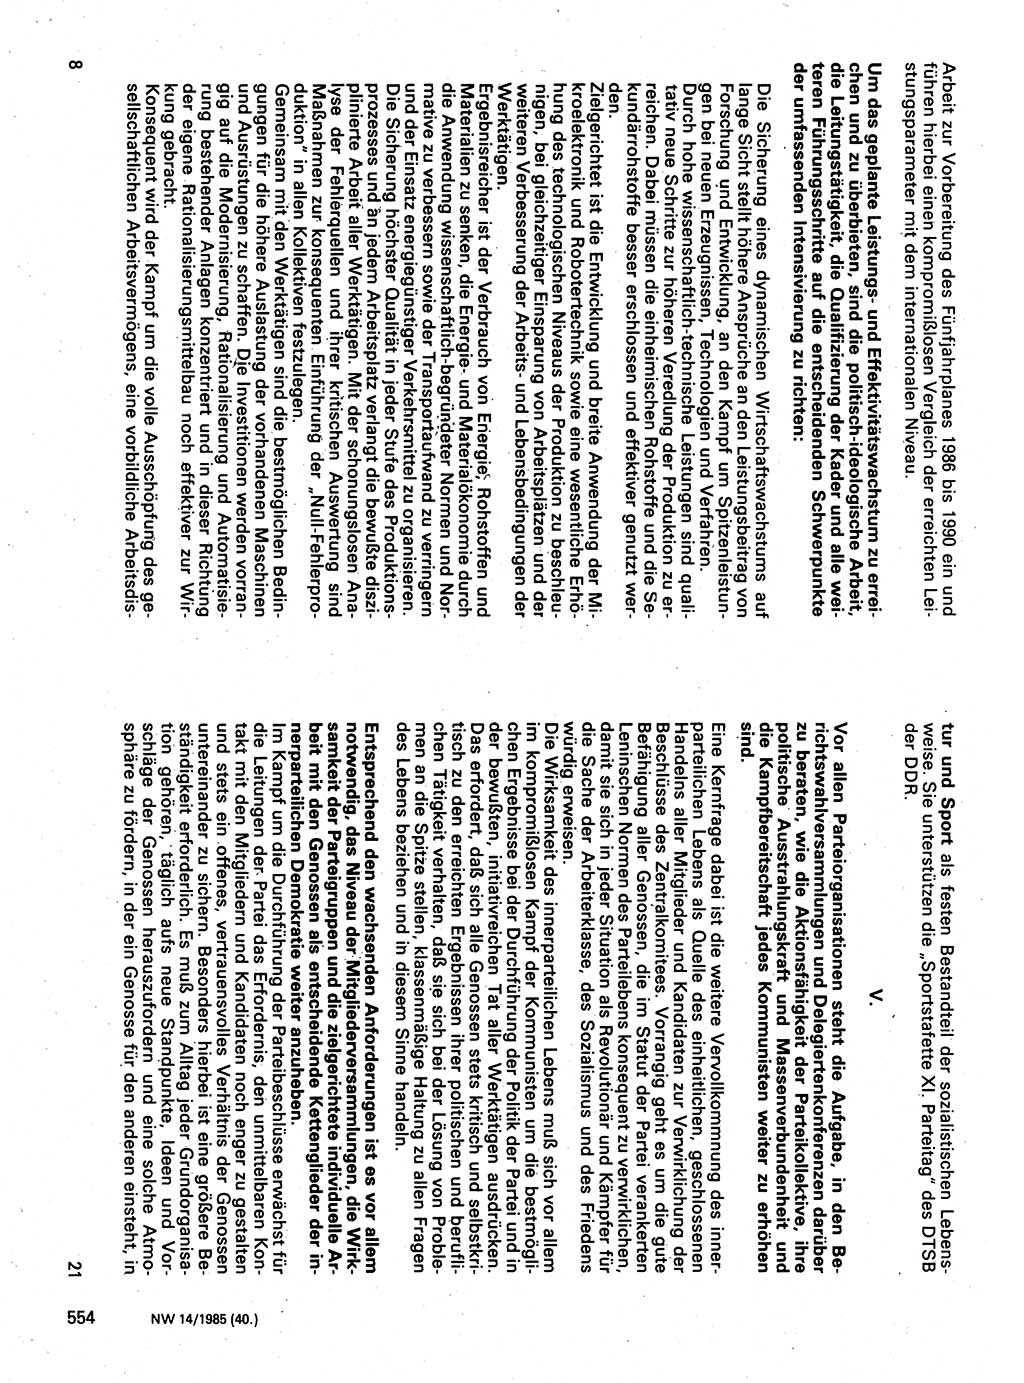 Neuer Weg (NW), Organ des Zentralkomitees (ZK) der SED (Sozialistische Einheitspartei Deutschlands) für Fragen des Parteilebens, 40. Jahrgang [Deutsche Demokratische Republik (DDR)] 1985, Seite 554 (NW ZK SED DDR 1985, S. 554)